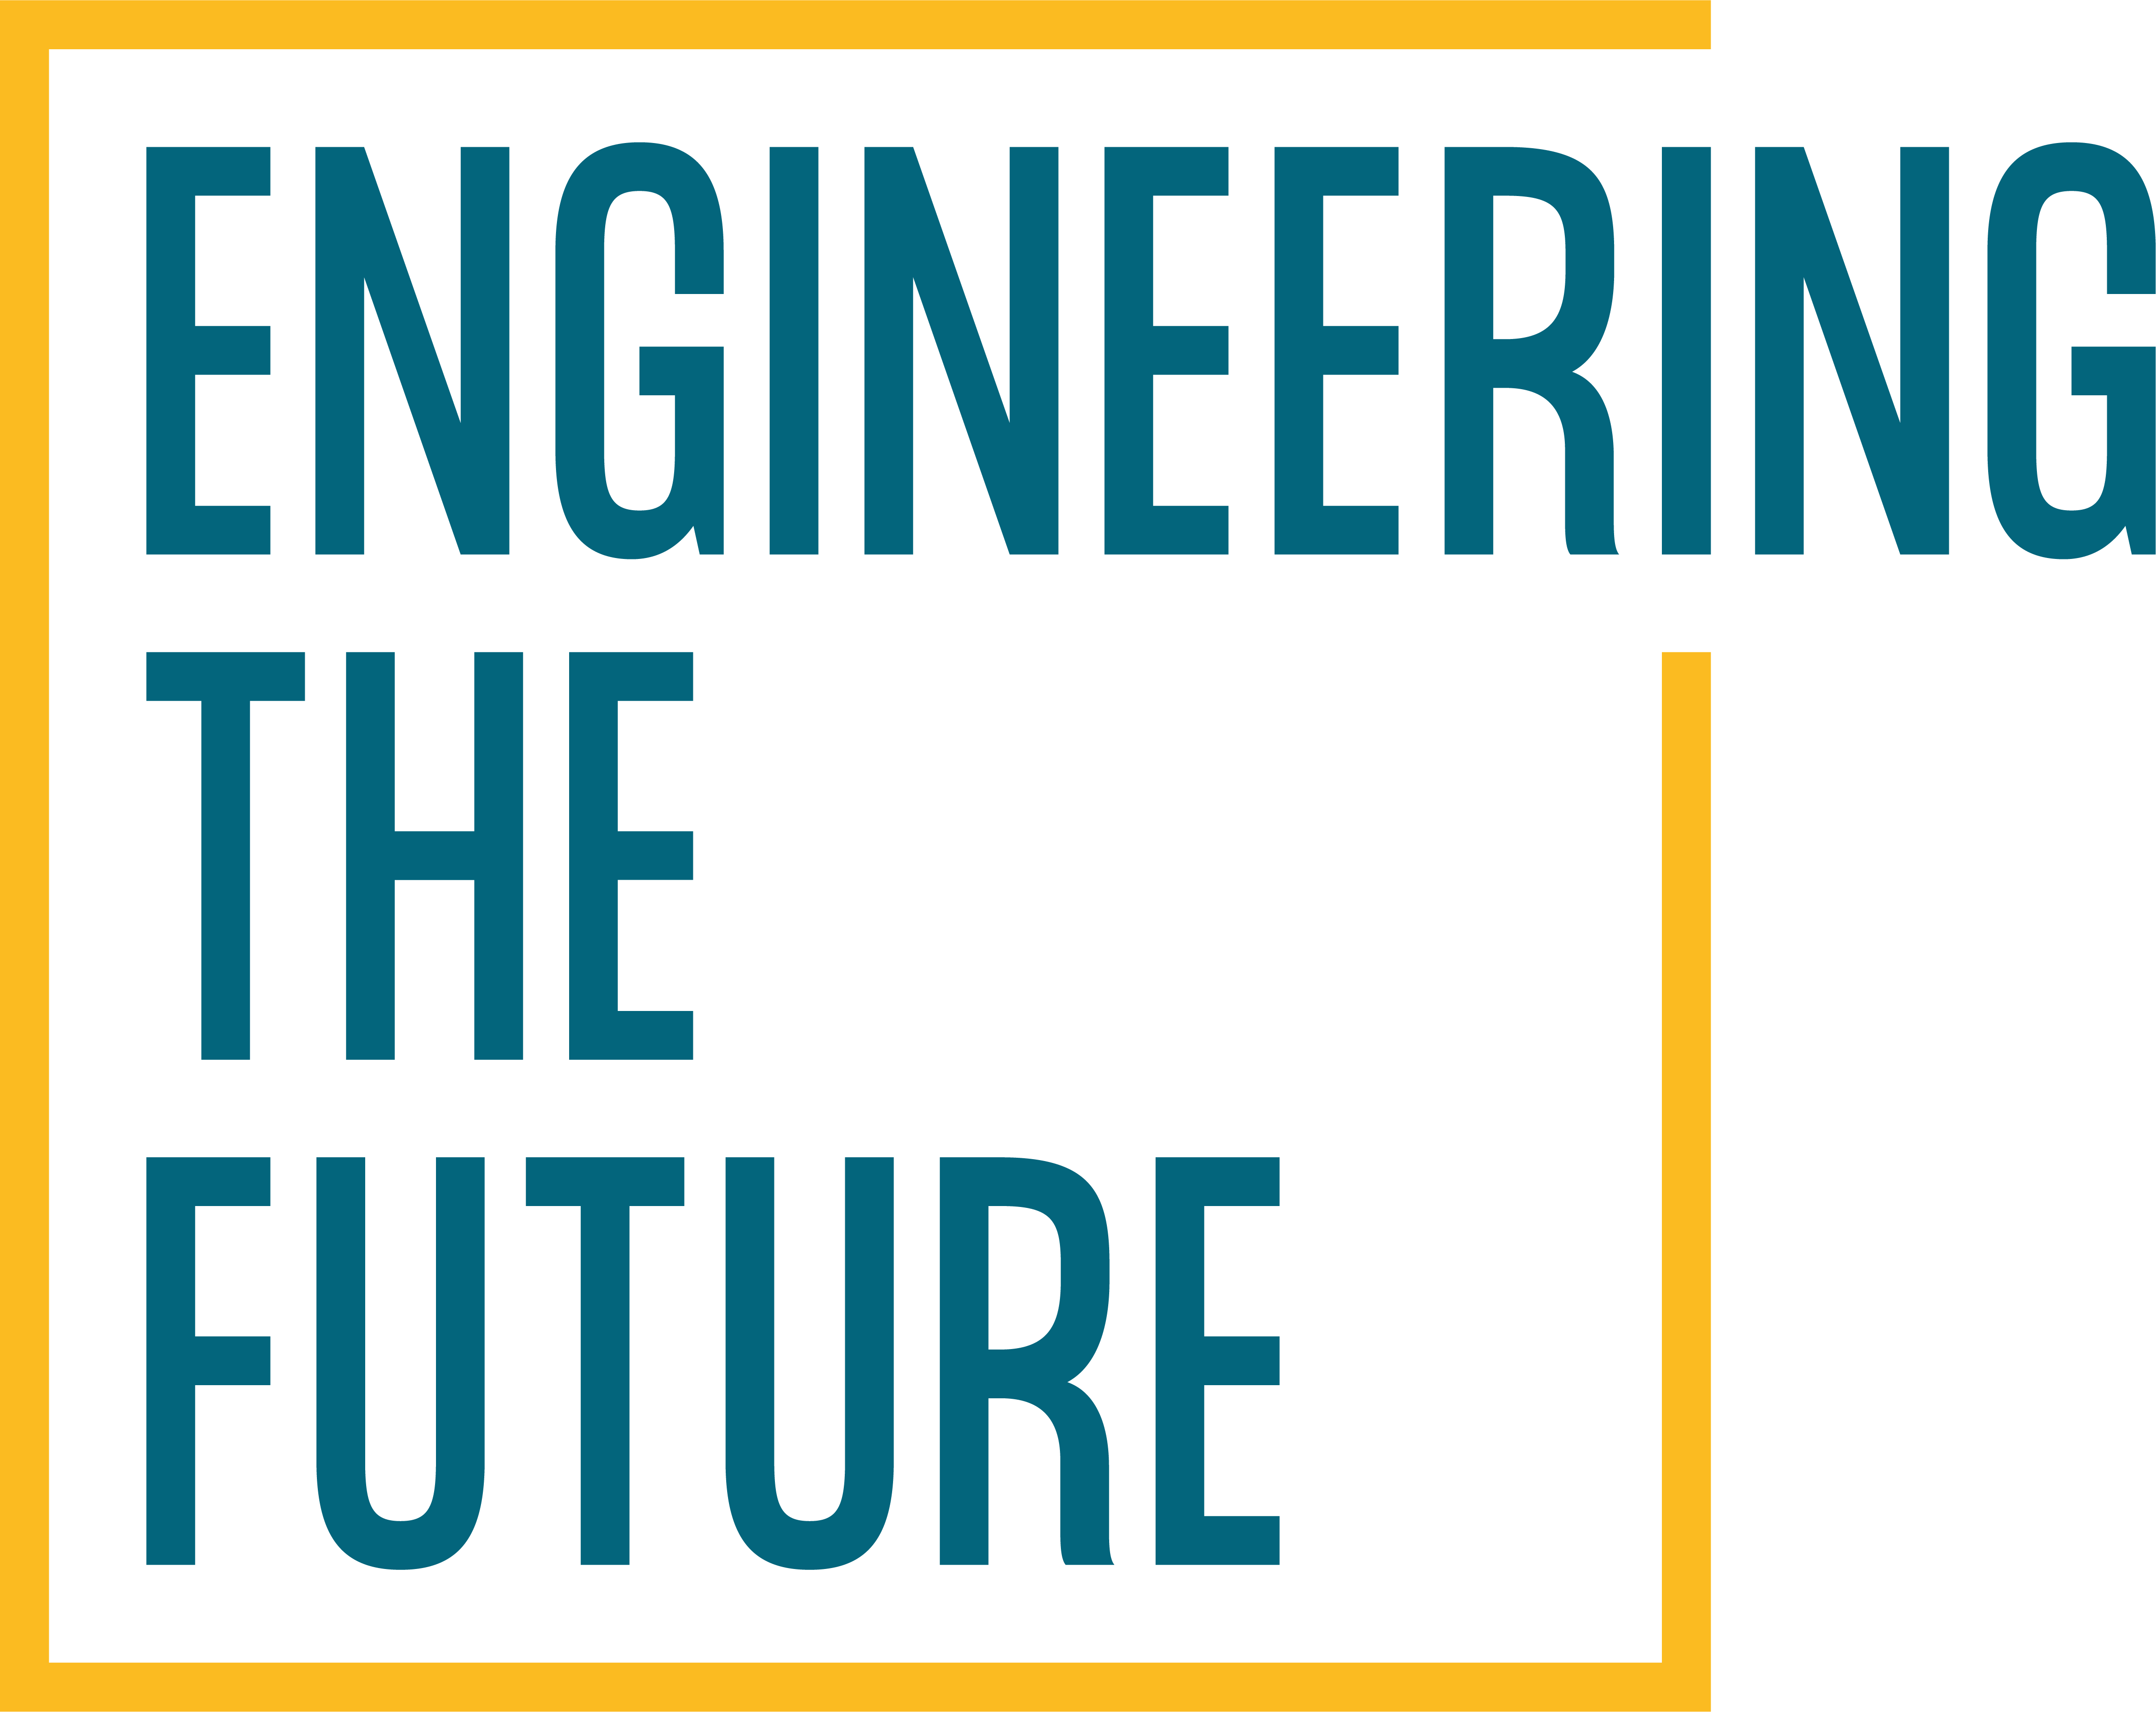 Indra Engineering the future es marca candidata a Premios Internacionales Marcas que Enamoran 2022